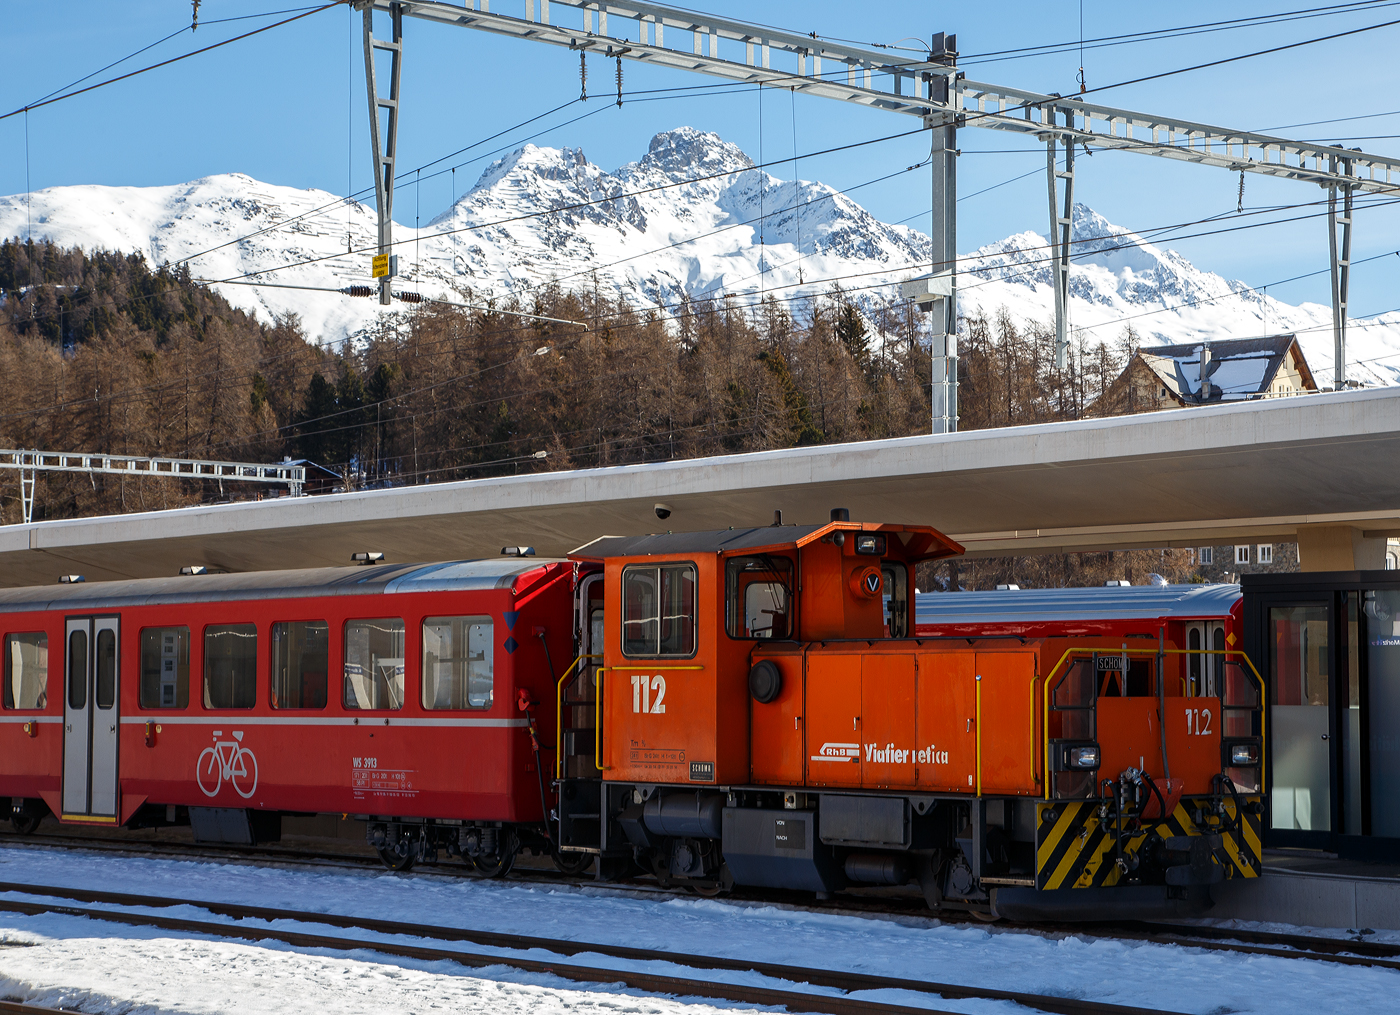 Die RhB Tm 2/2 112 (eine Schöma CFL 250 DCL ) am 20 Februar 2017 im Bahnhof  St. Moritz, bei der Arbeit.

Die Lok wurde 2001 von Schöma (Christoph Schöttler Maschinenfabrik GmbH) in Diepholz unter der Fabriknummer 5667 gebaut und an die RhB geliefert.